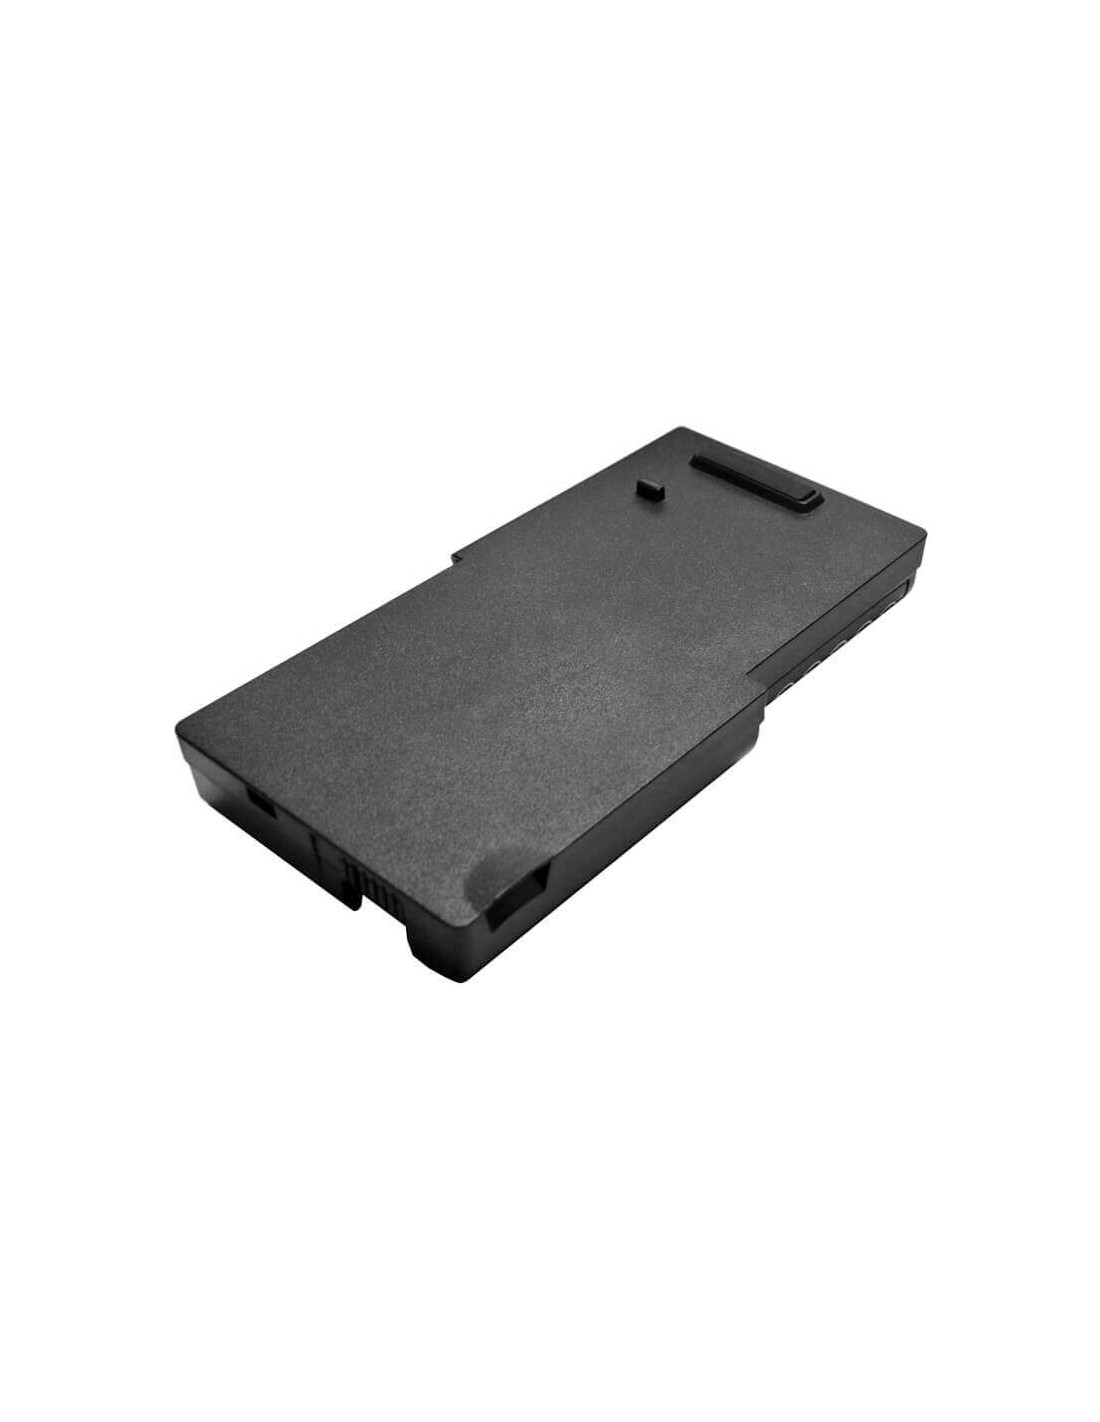 Black Battery for Ibm Thinkpad R40e, Thinkpad R40e-2684, Thinkpad R40e-2685 10.8V, 4400mAh - 47.52Wh